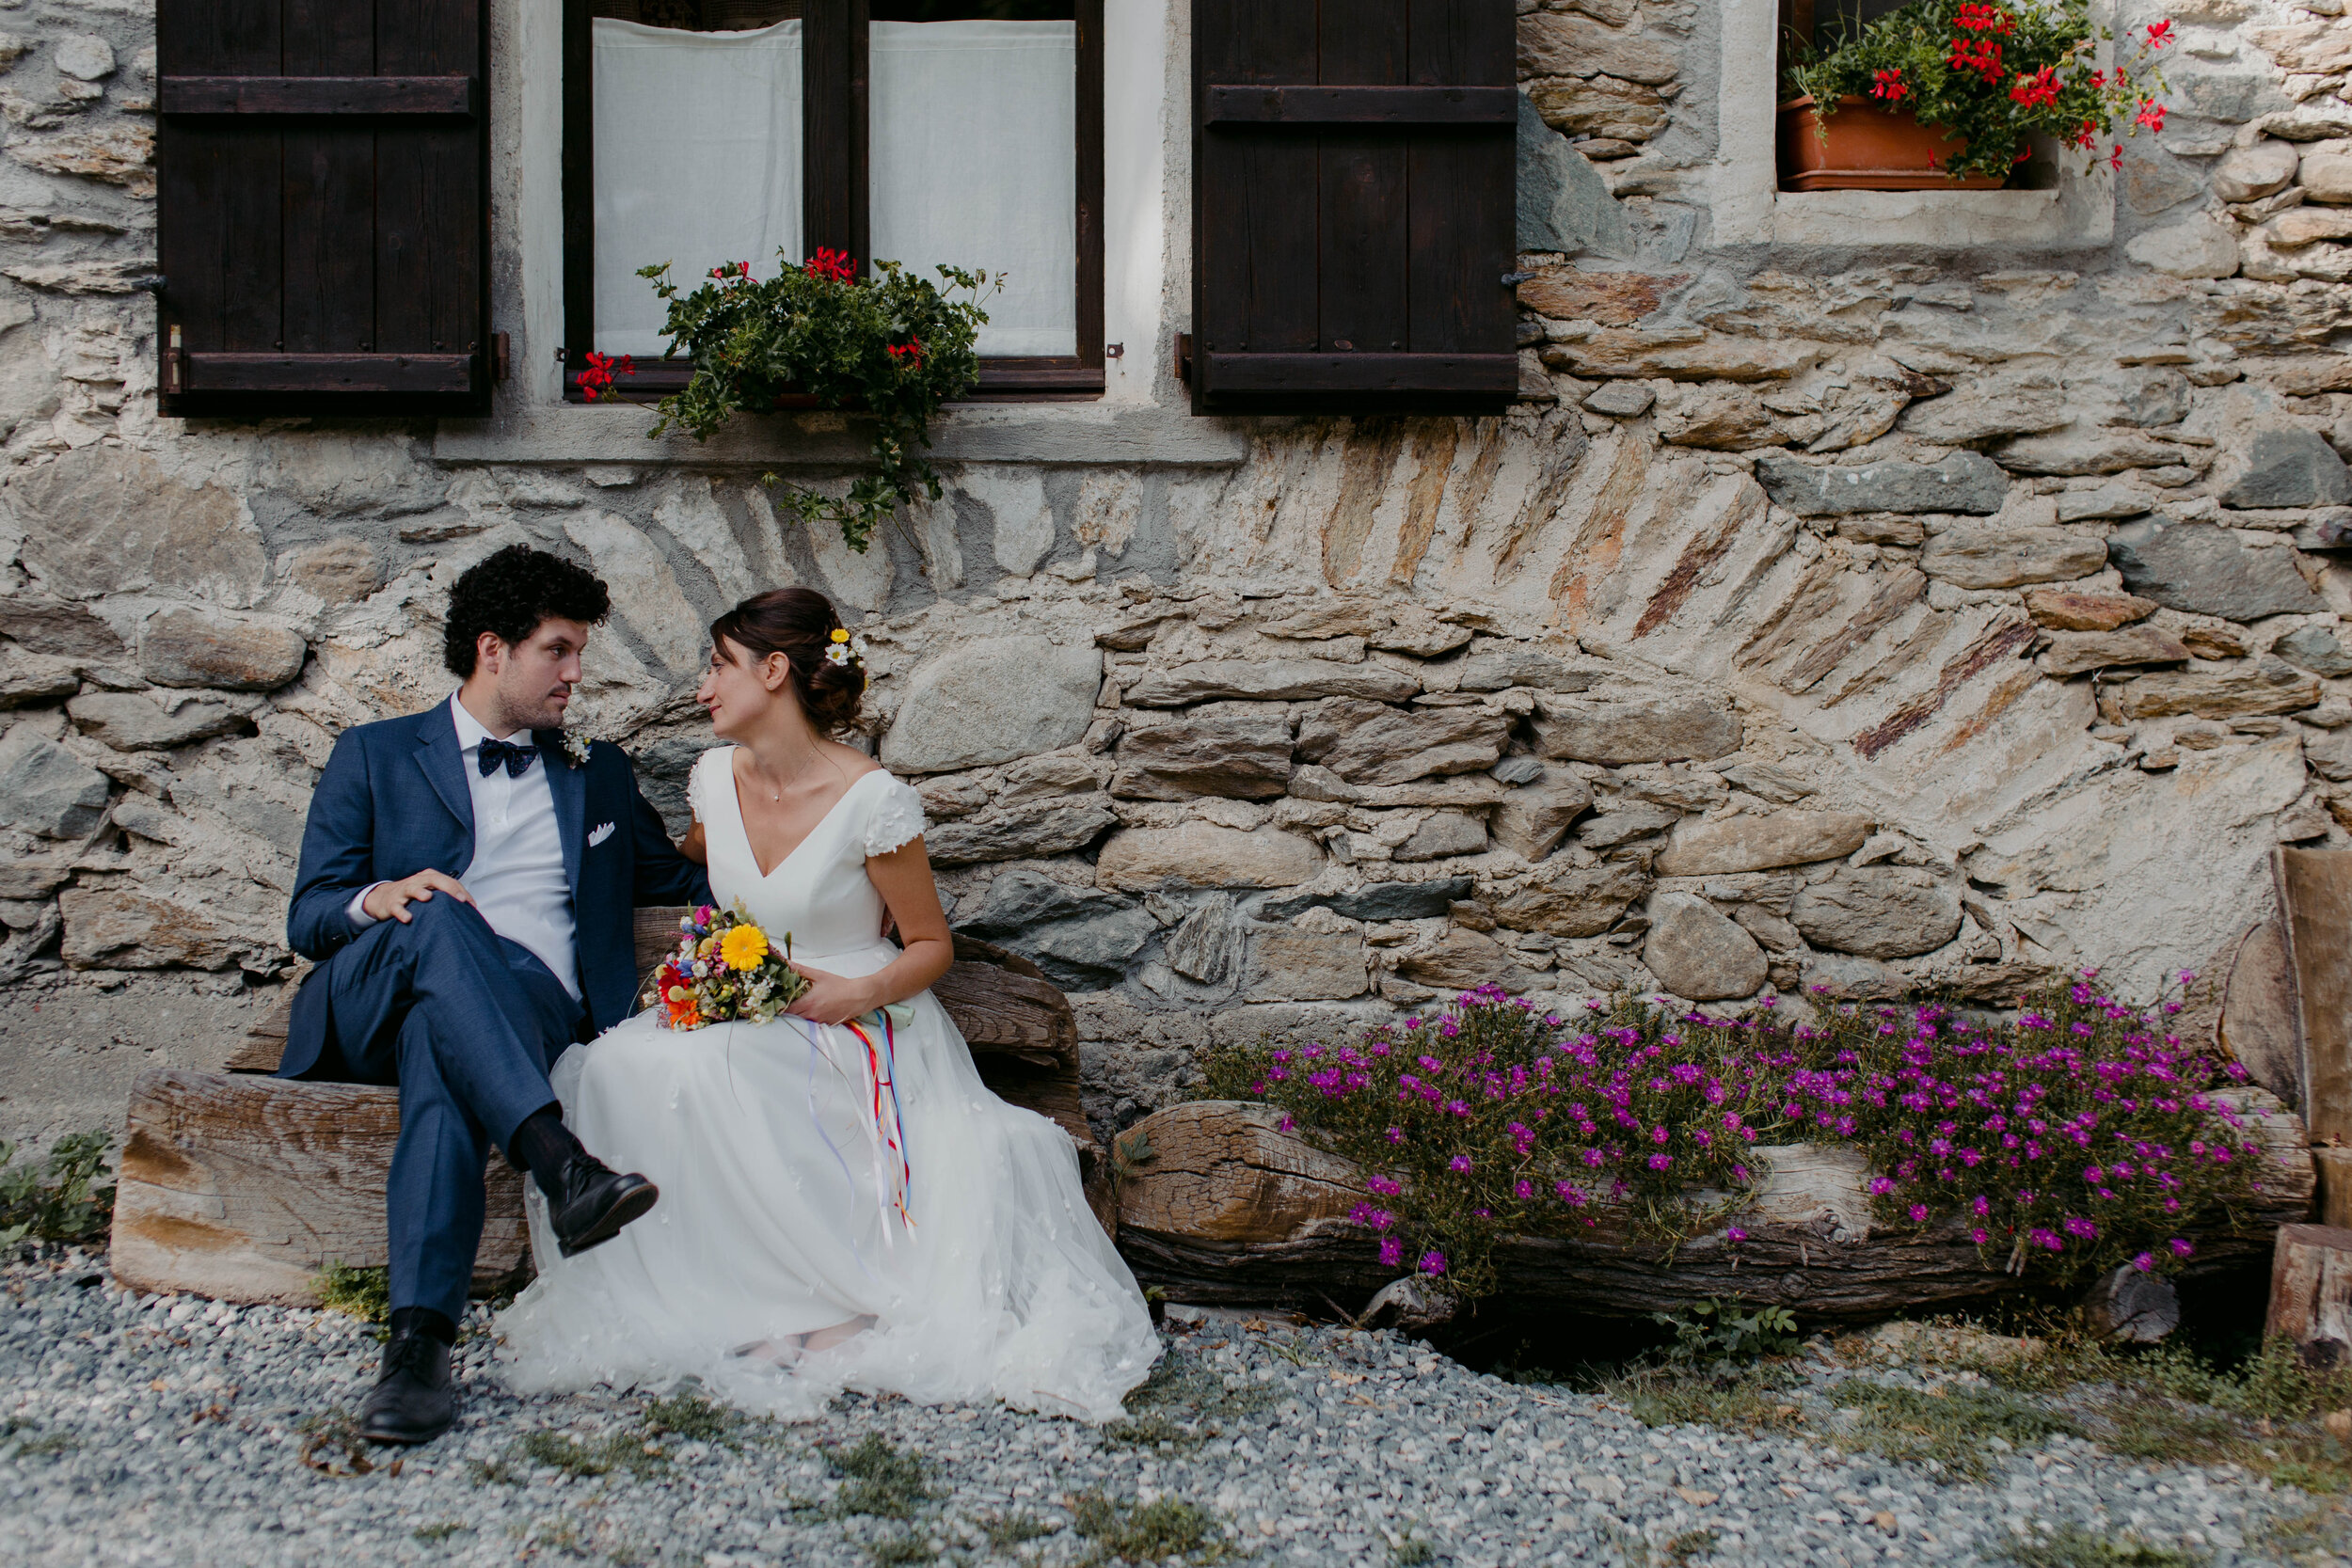 047 - Matrimonio in Val di Susa - Miriam Callegari Fotografa.JPG